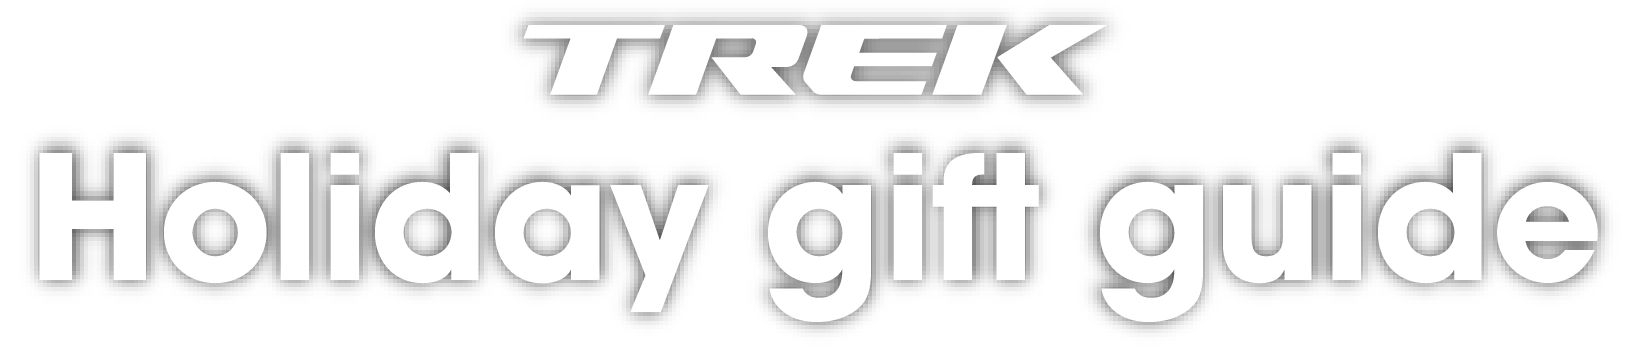 Trek Holiday Gift Guide